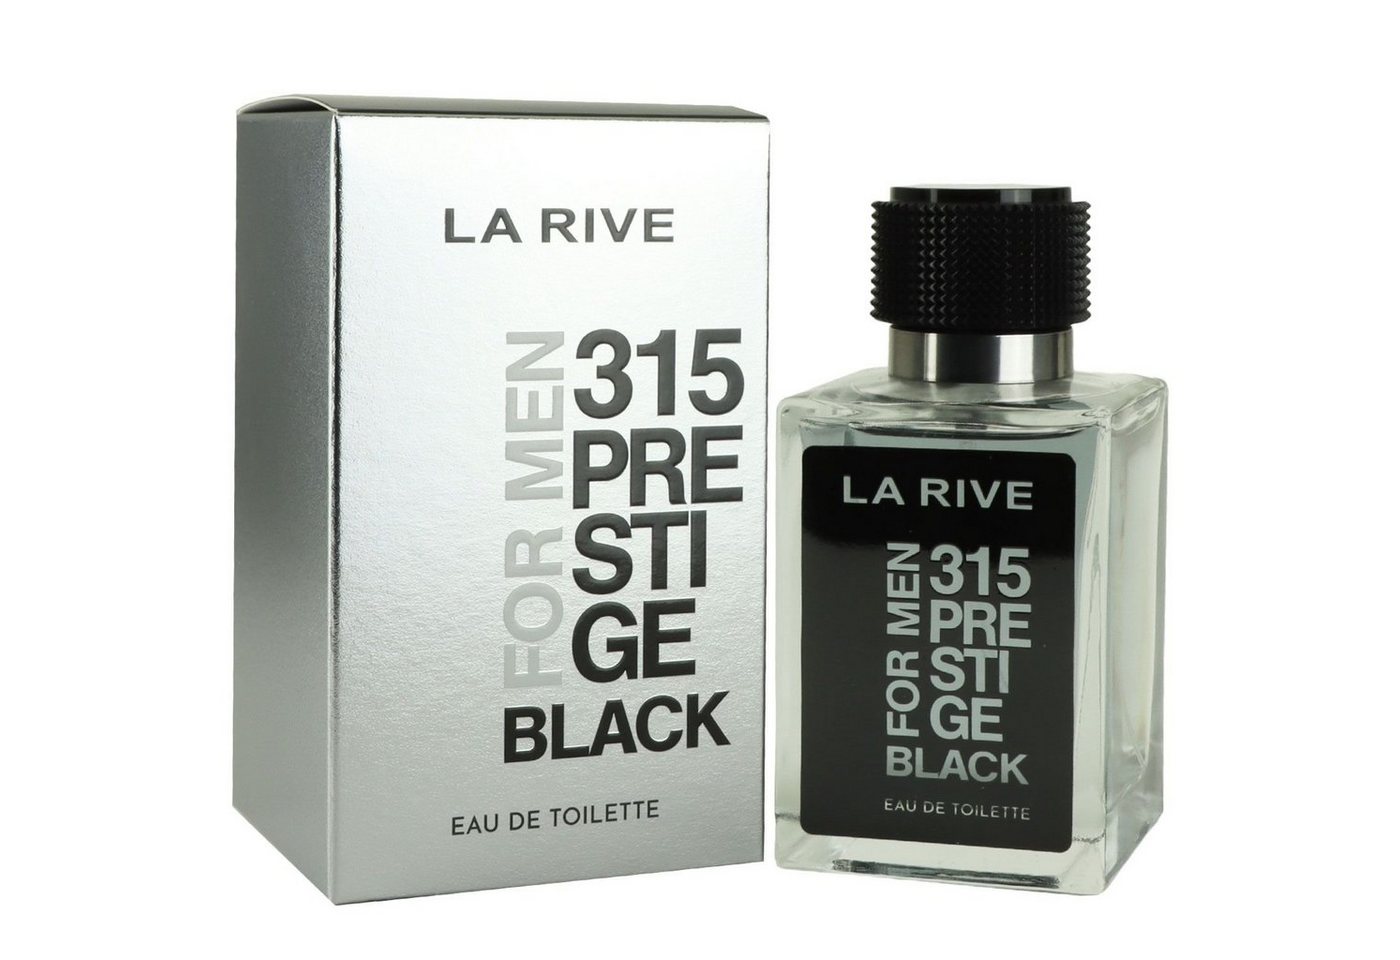 La Rive Eau de Toilette 315 Prestige Black Eau de Toilette 100 ml von La Rive